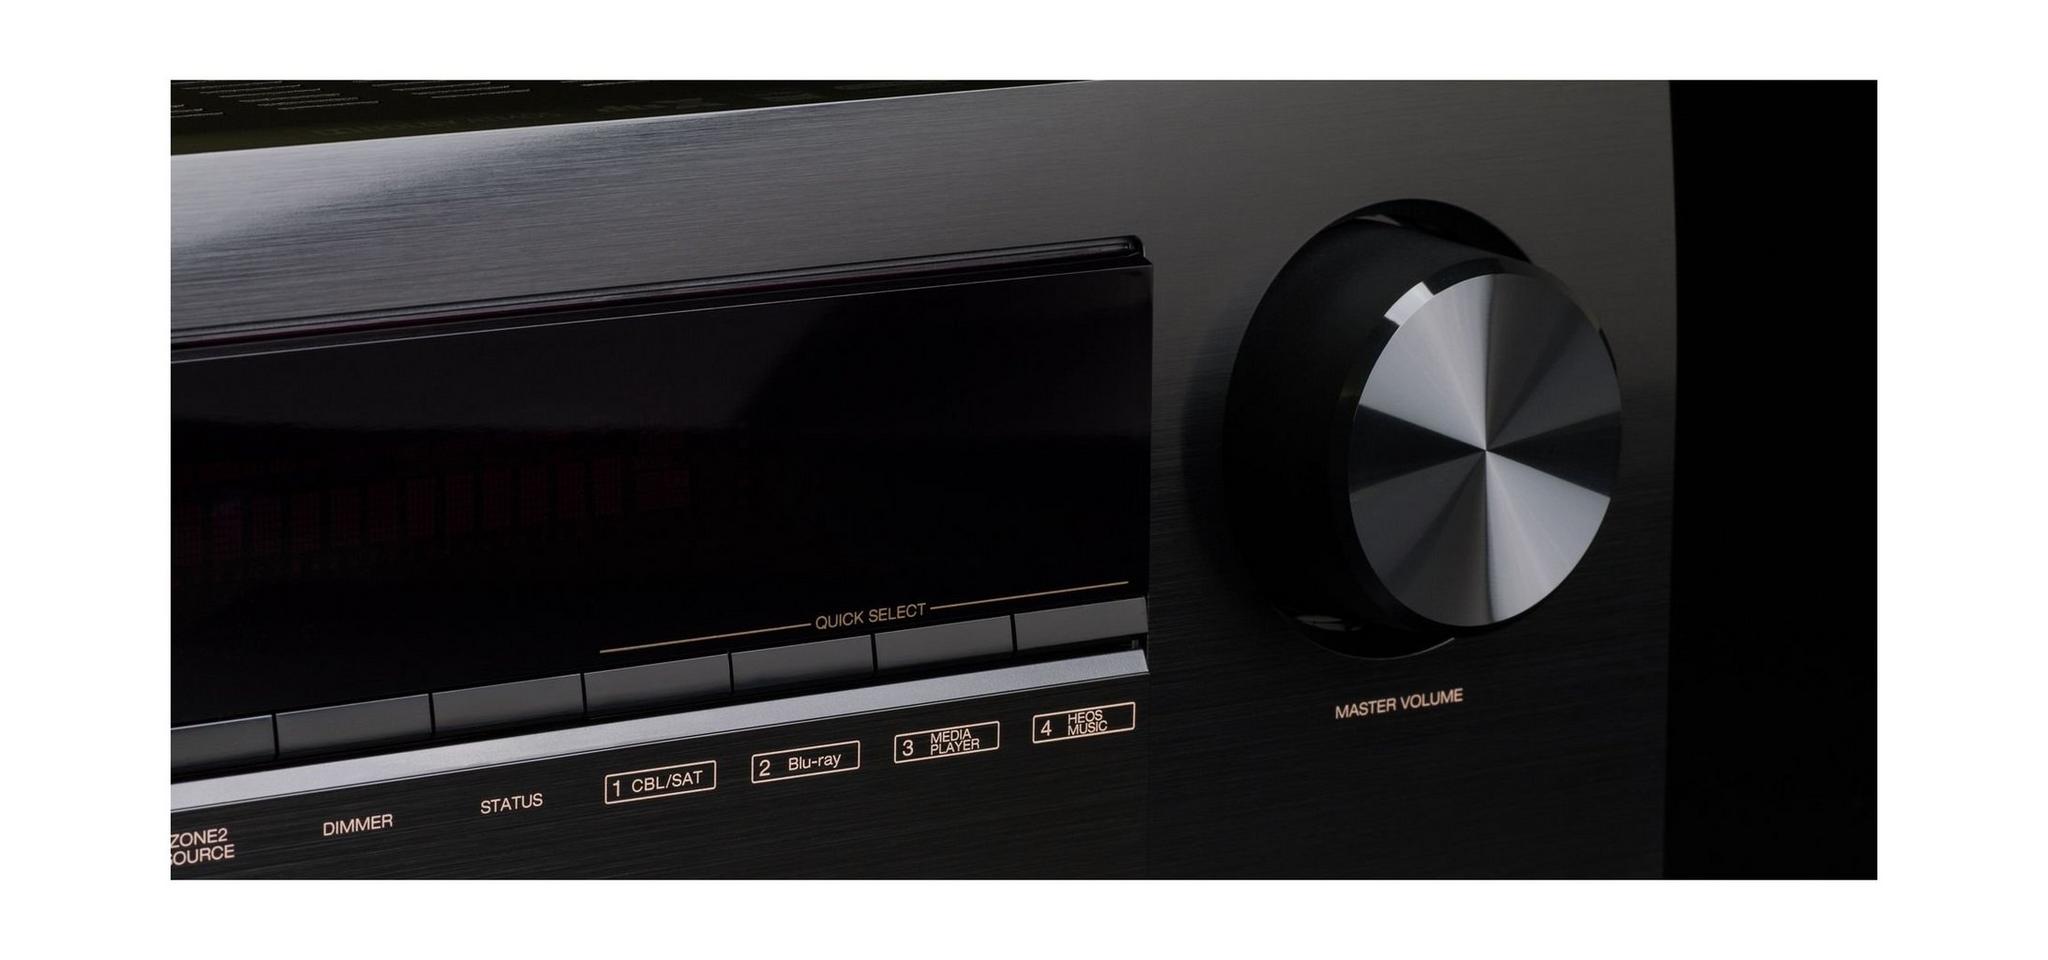 جهاز استقبال الصوت والفيديو ٧,٢ قناة بقوة ٩٥ واط من دينون - AVRX2500